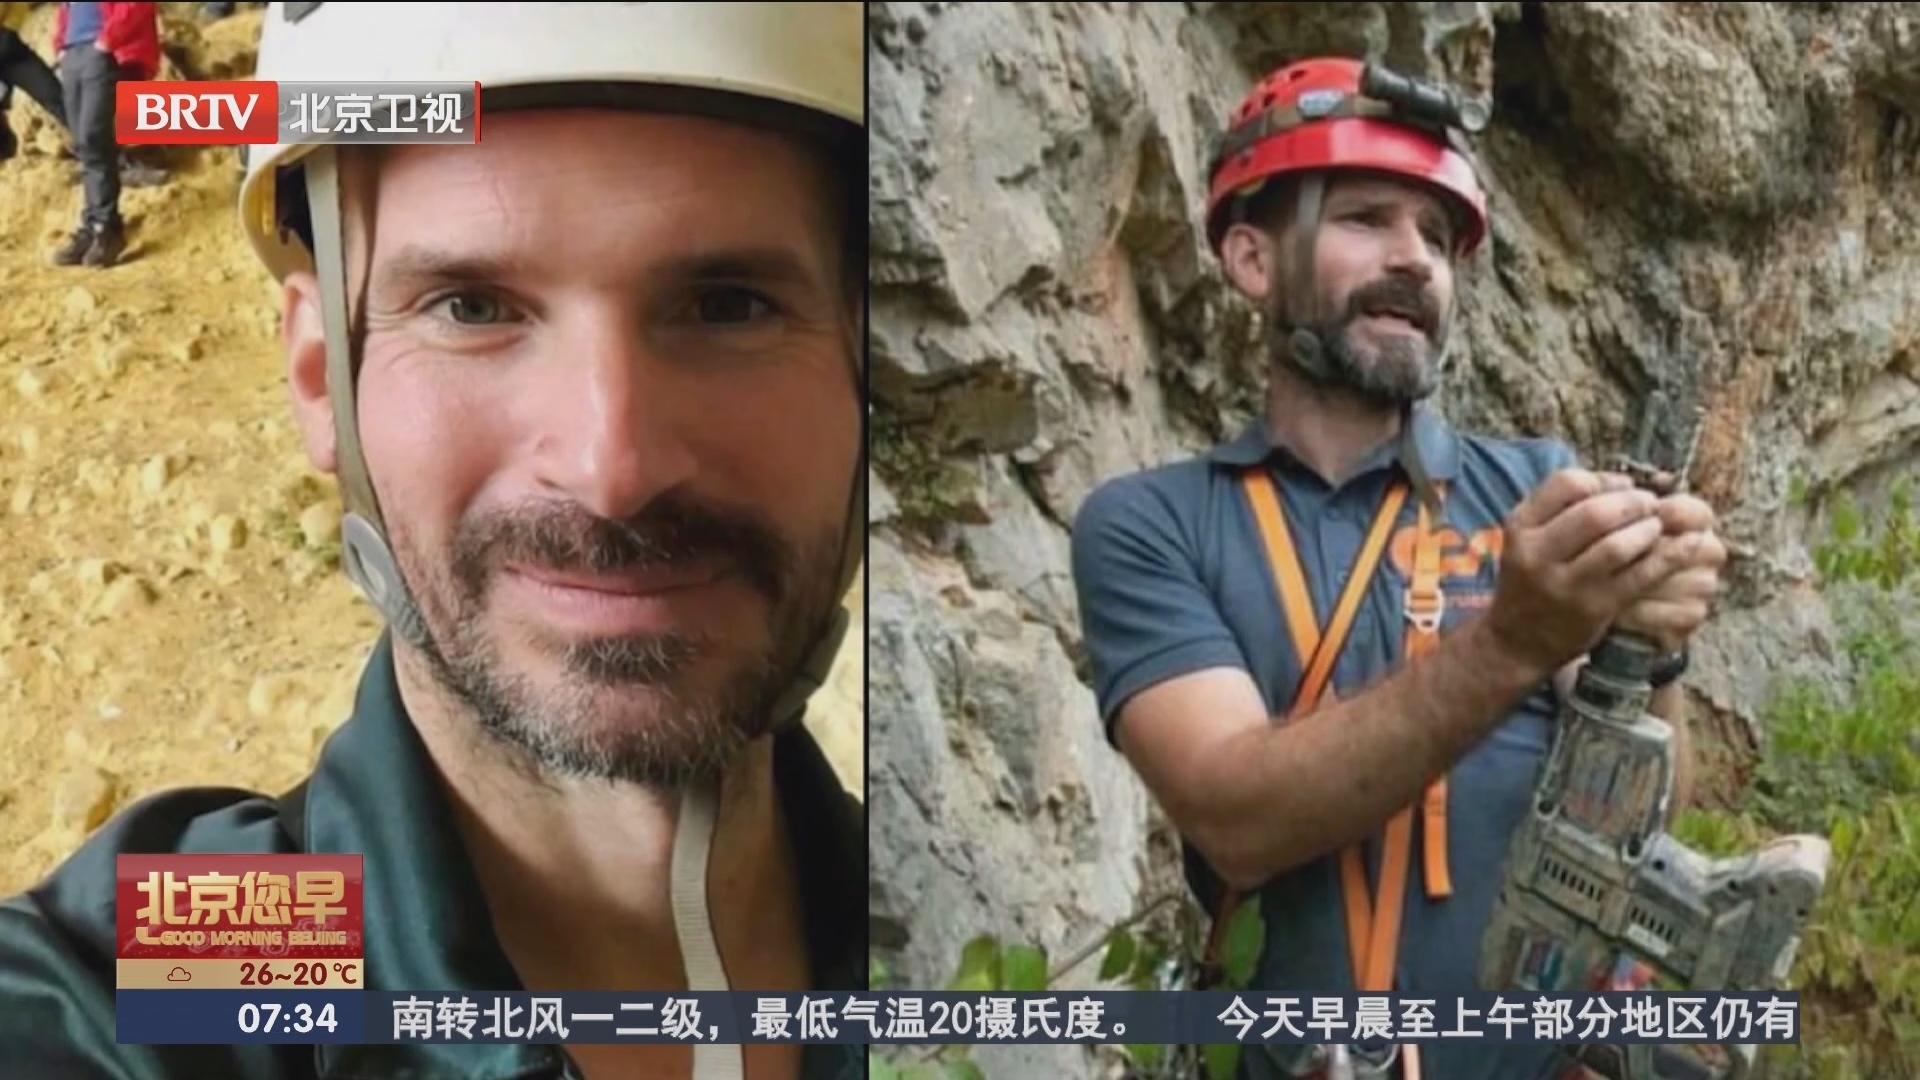 被困地下1000米 美国洞穴研究员发视频感谢救援队